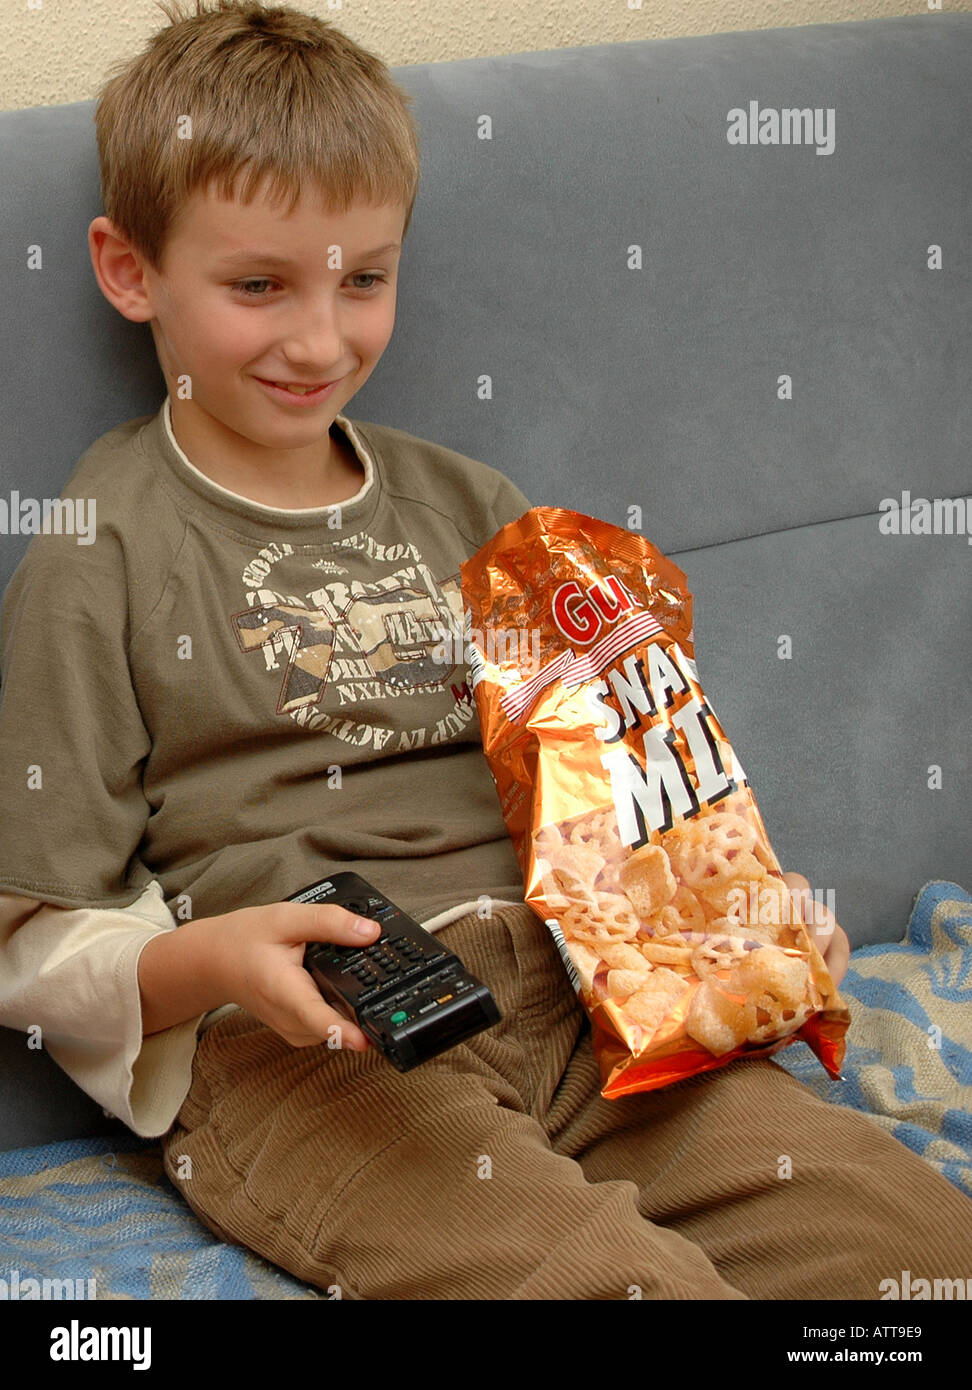 MR Junge beim Fernsehen mit Fernbedienung und Chips MR boy is watching TV and eating chips Bildagentur online Begsteiger Stock Photo